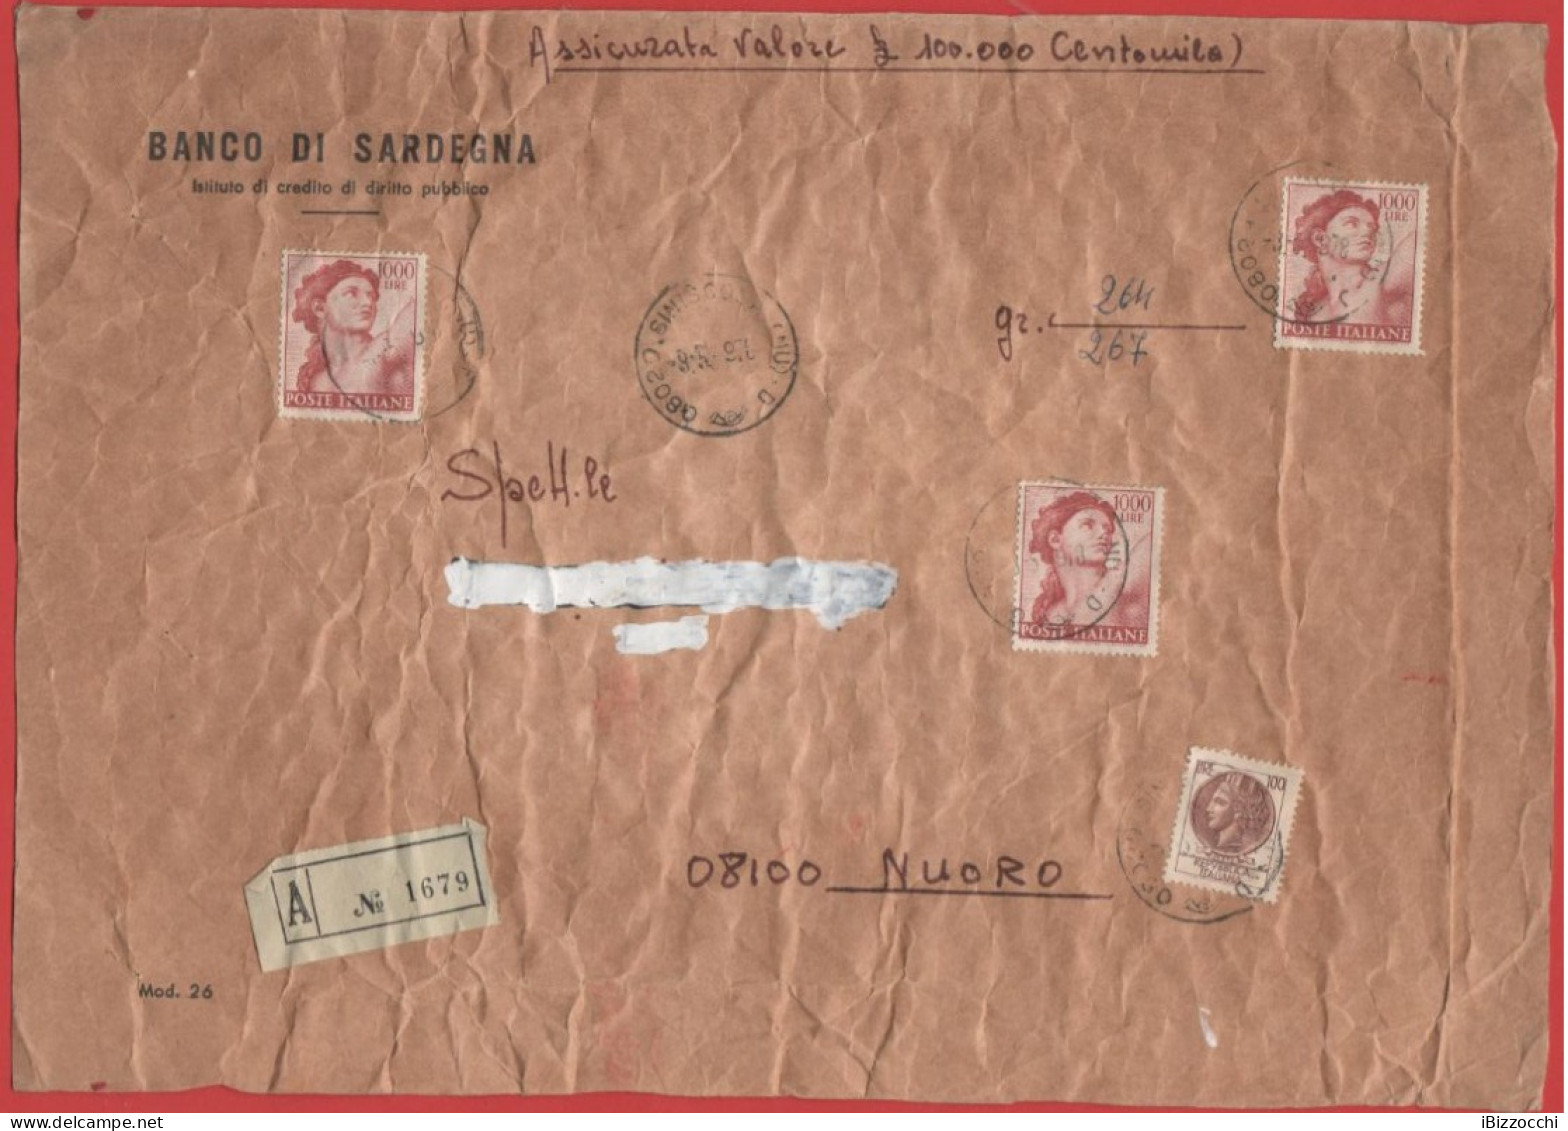 ITALIA - Storia Postale Repubblica - 1978 - 3x 1000 Michelangiolesca + 100 Siracusana - Assicurata - Solo Frontespizio - - 1971-80: Storia Postale